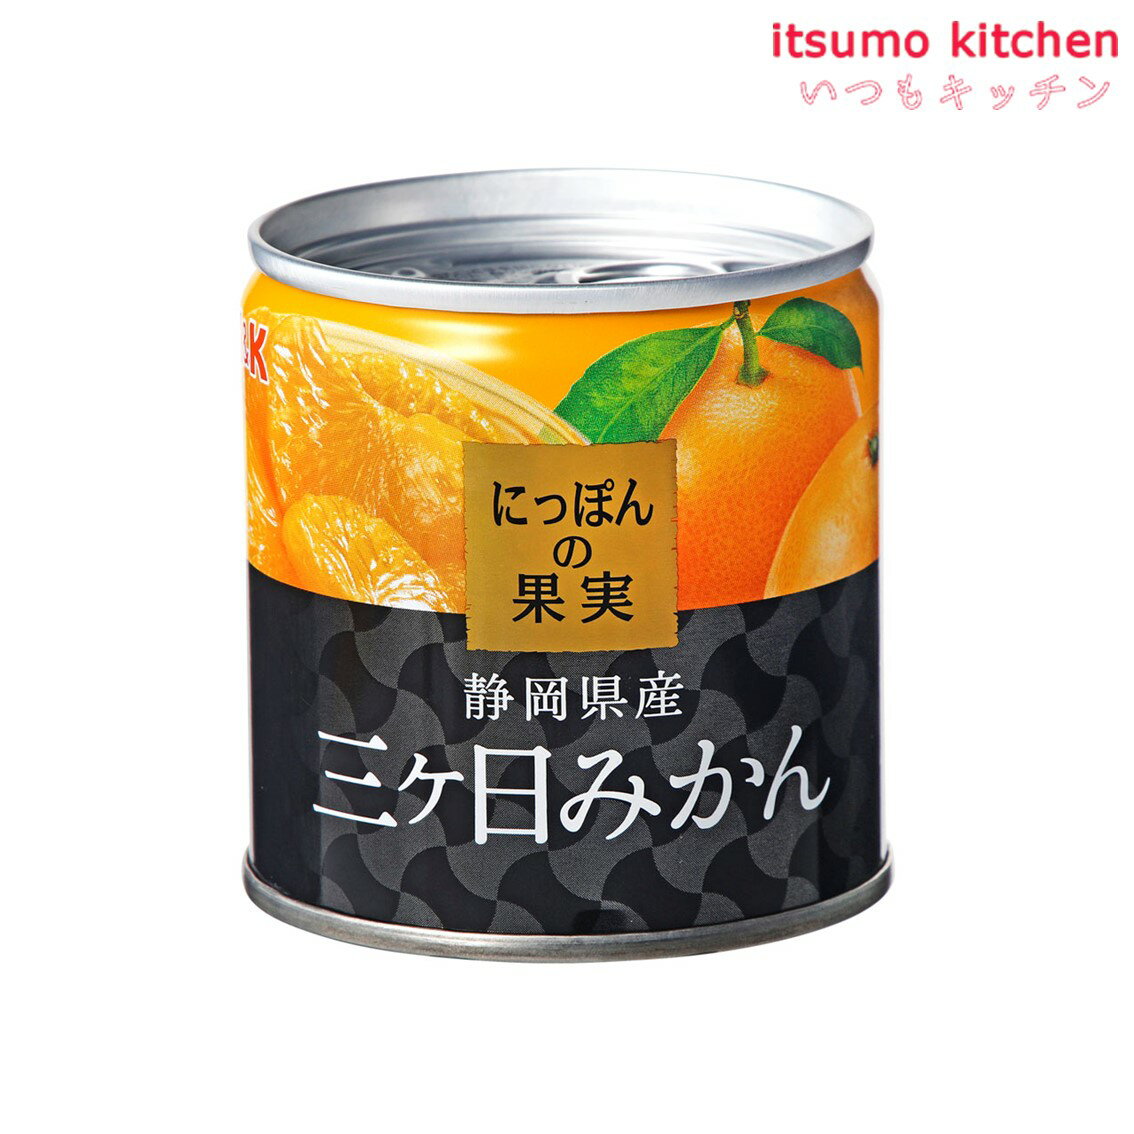 全国お取り寄せグルメ静岡フルーツ缶詰No.2